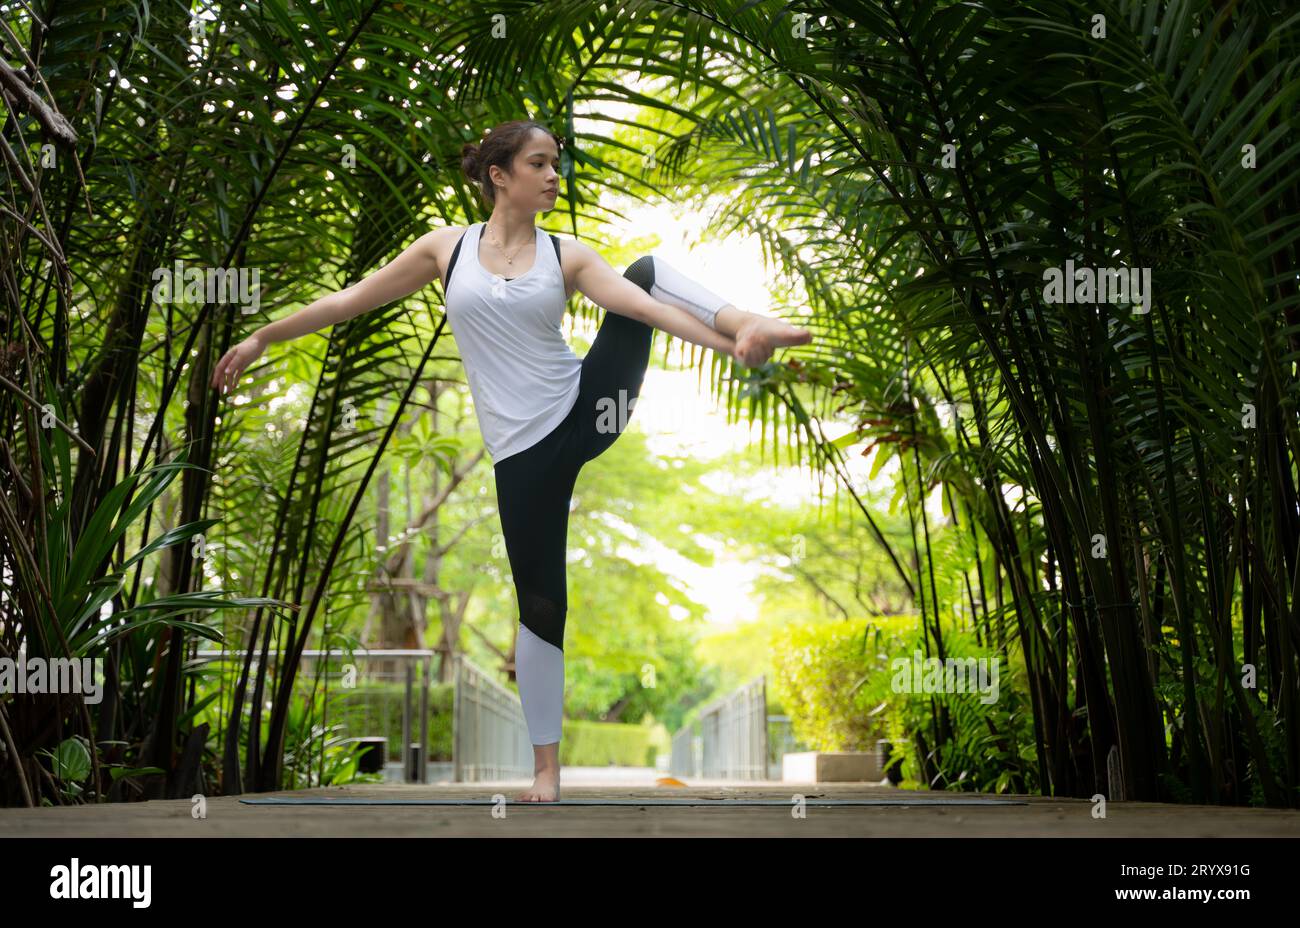 Jeune femme dans le jardin il y a des allées en bois et un tunnel d'arbres verts frais, avec des activités de yoga pour la santé Banque D'Images